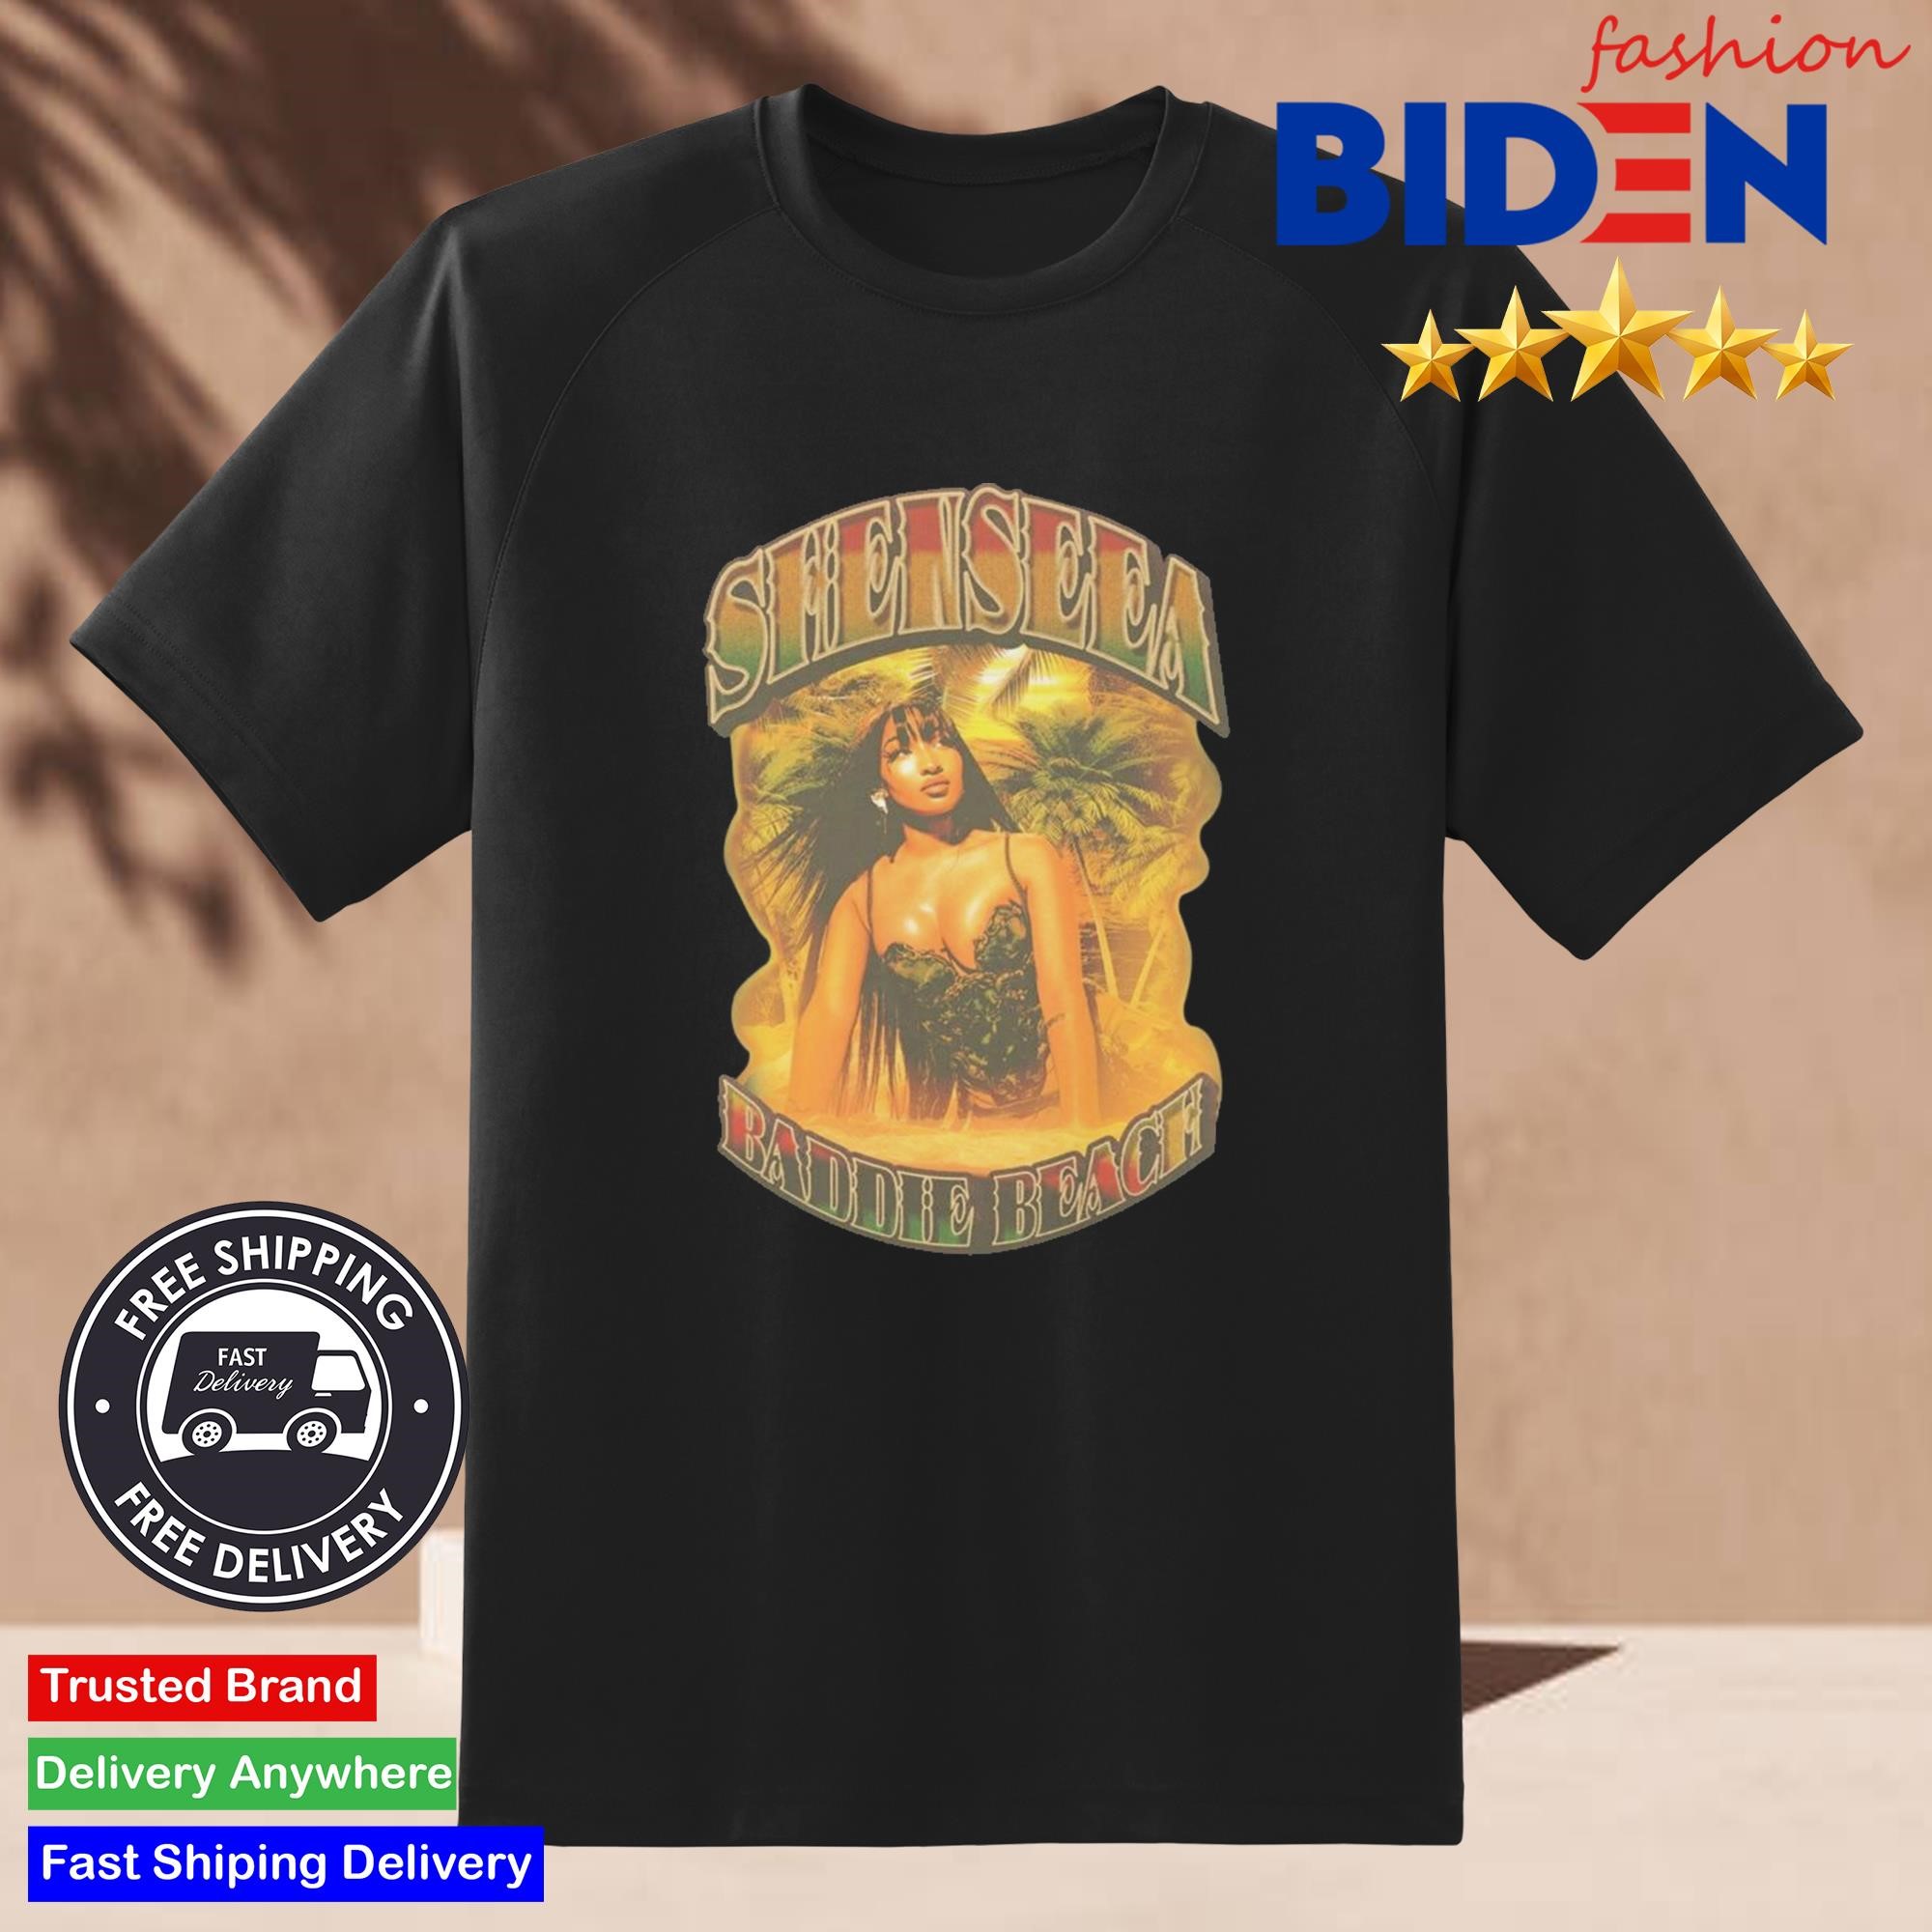 Shenseea Baddie Beach Shirt